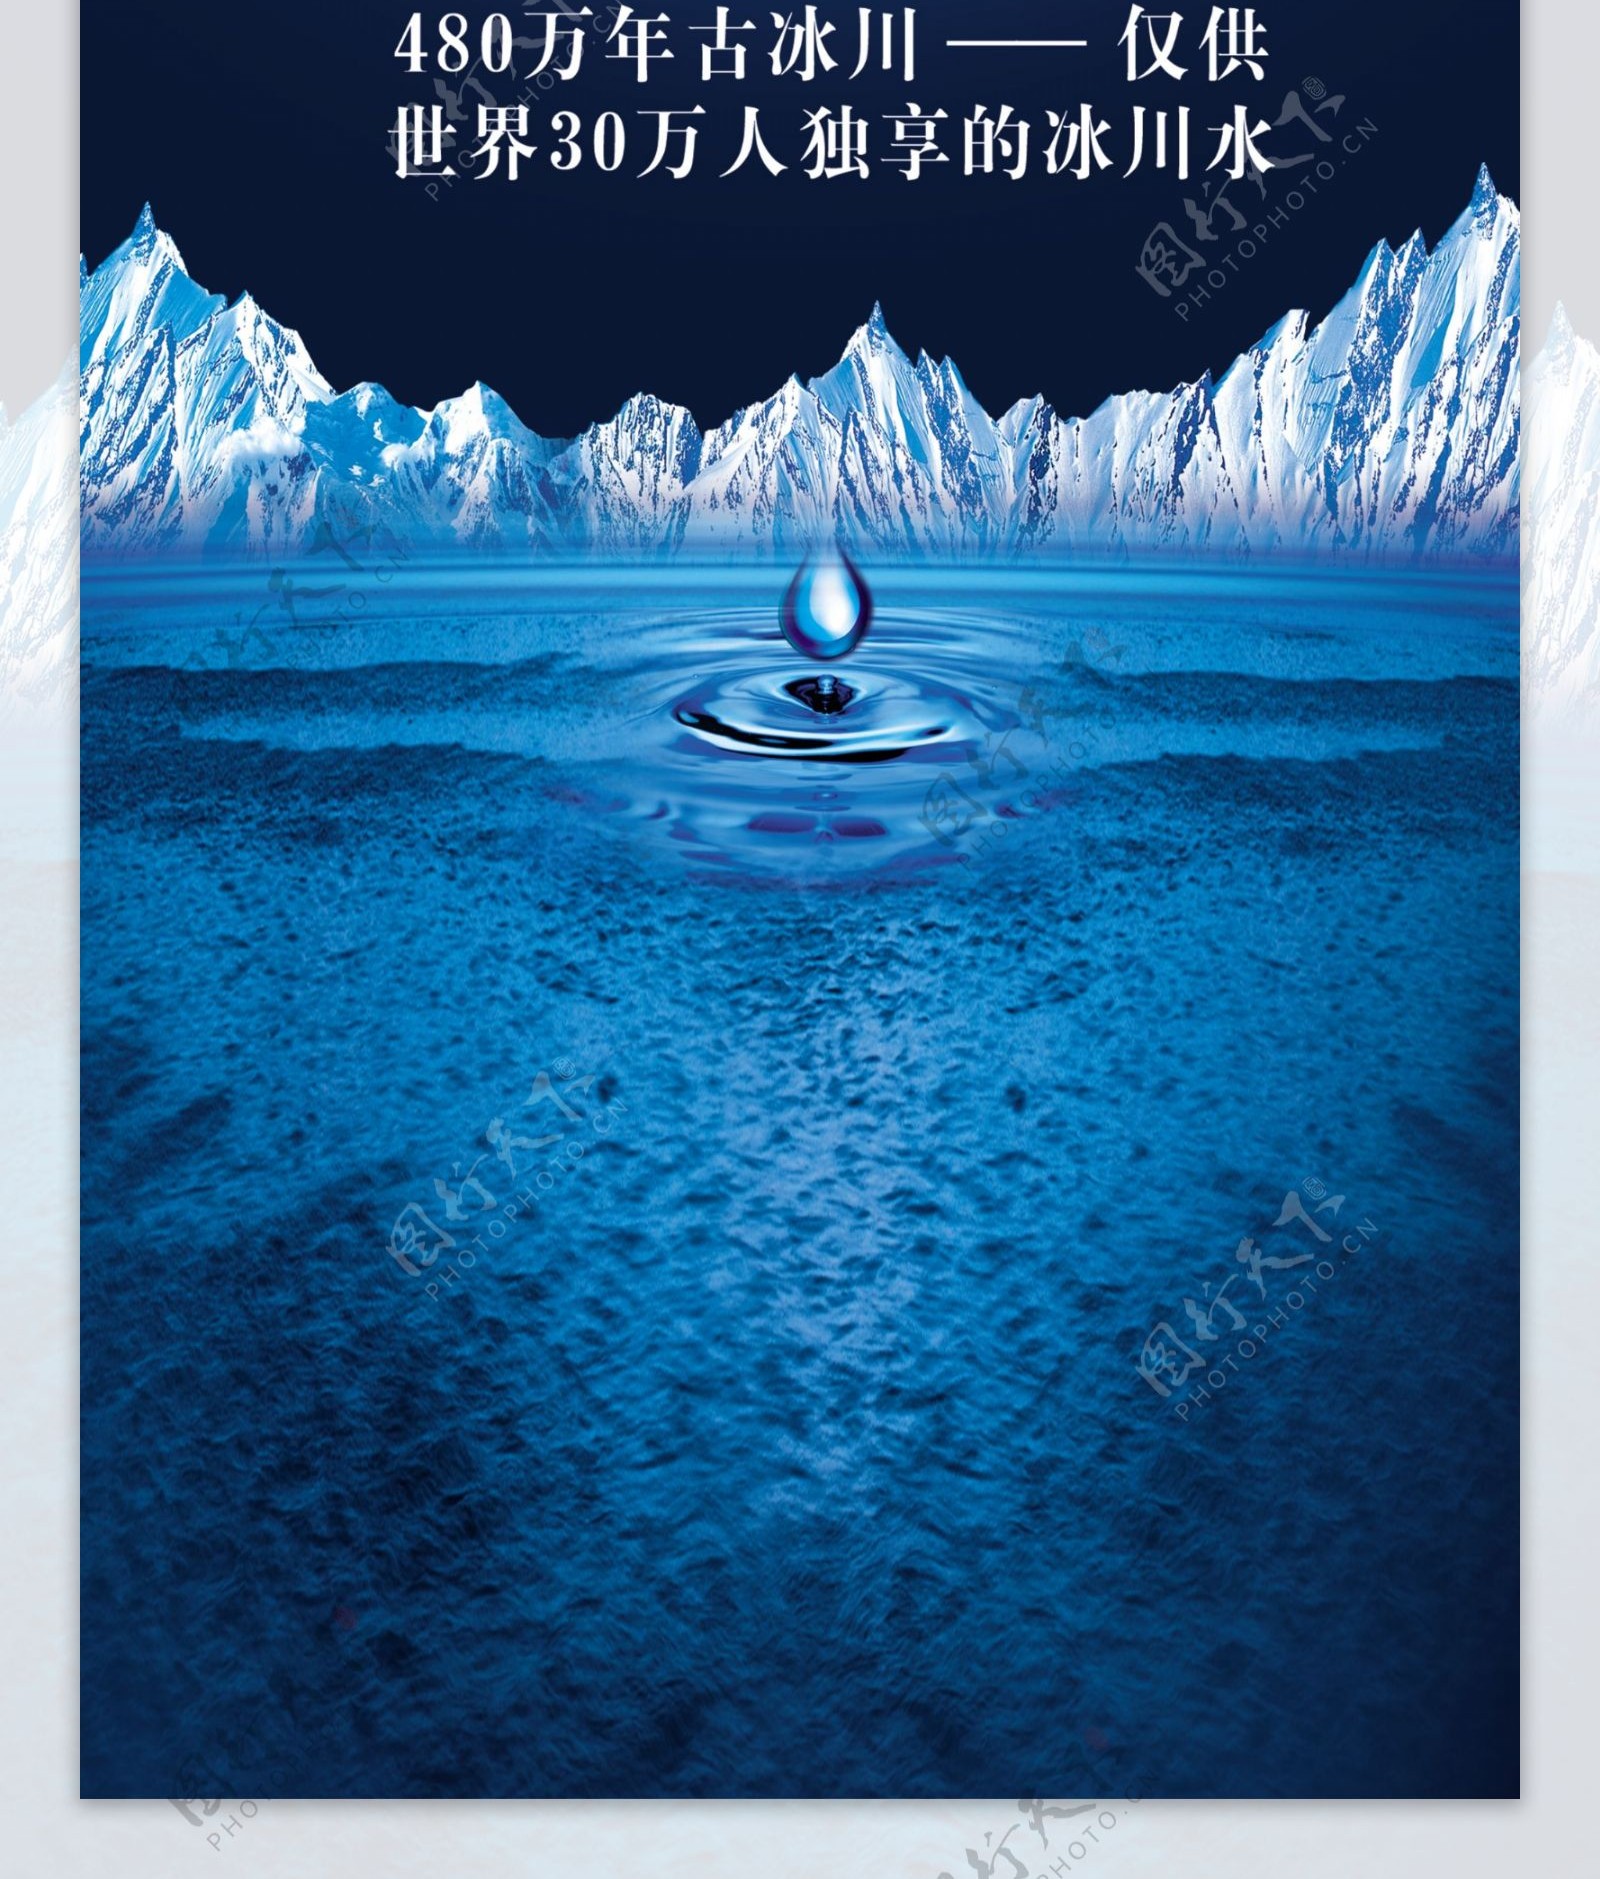 沁园冰川水广告